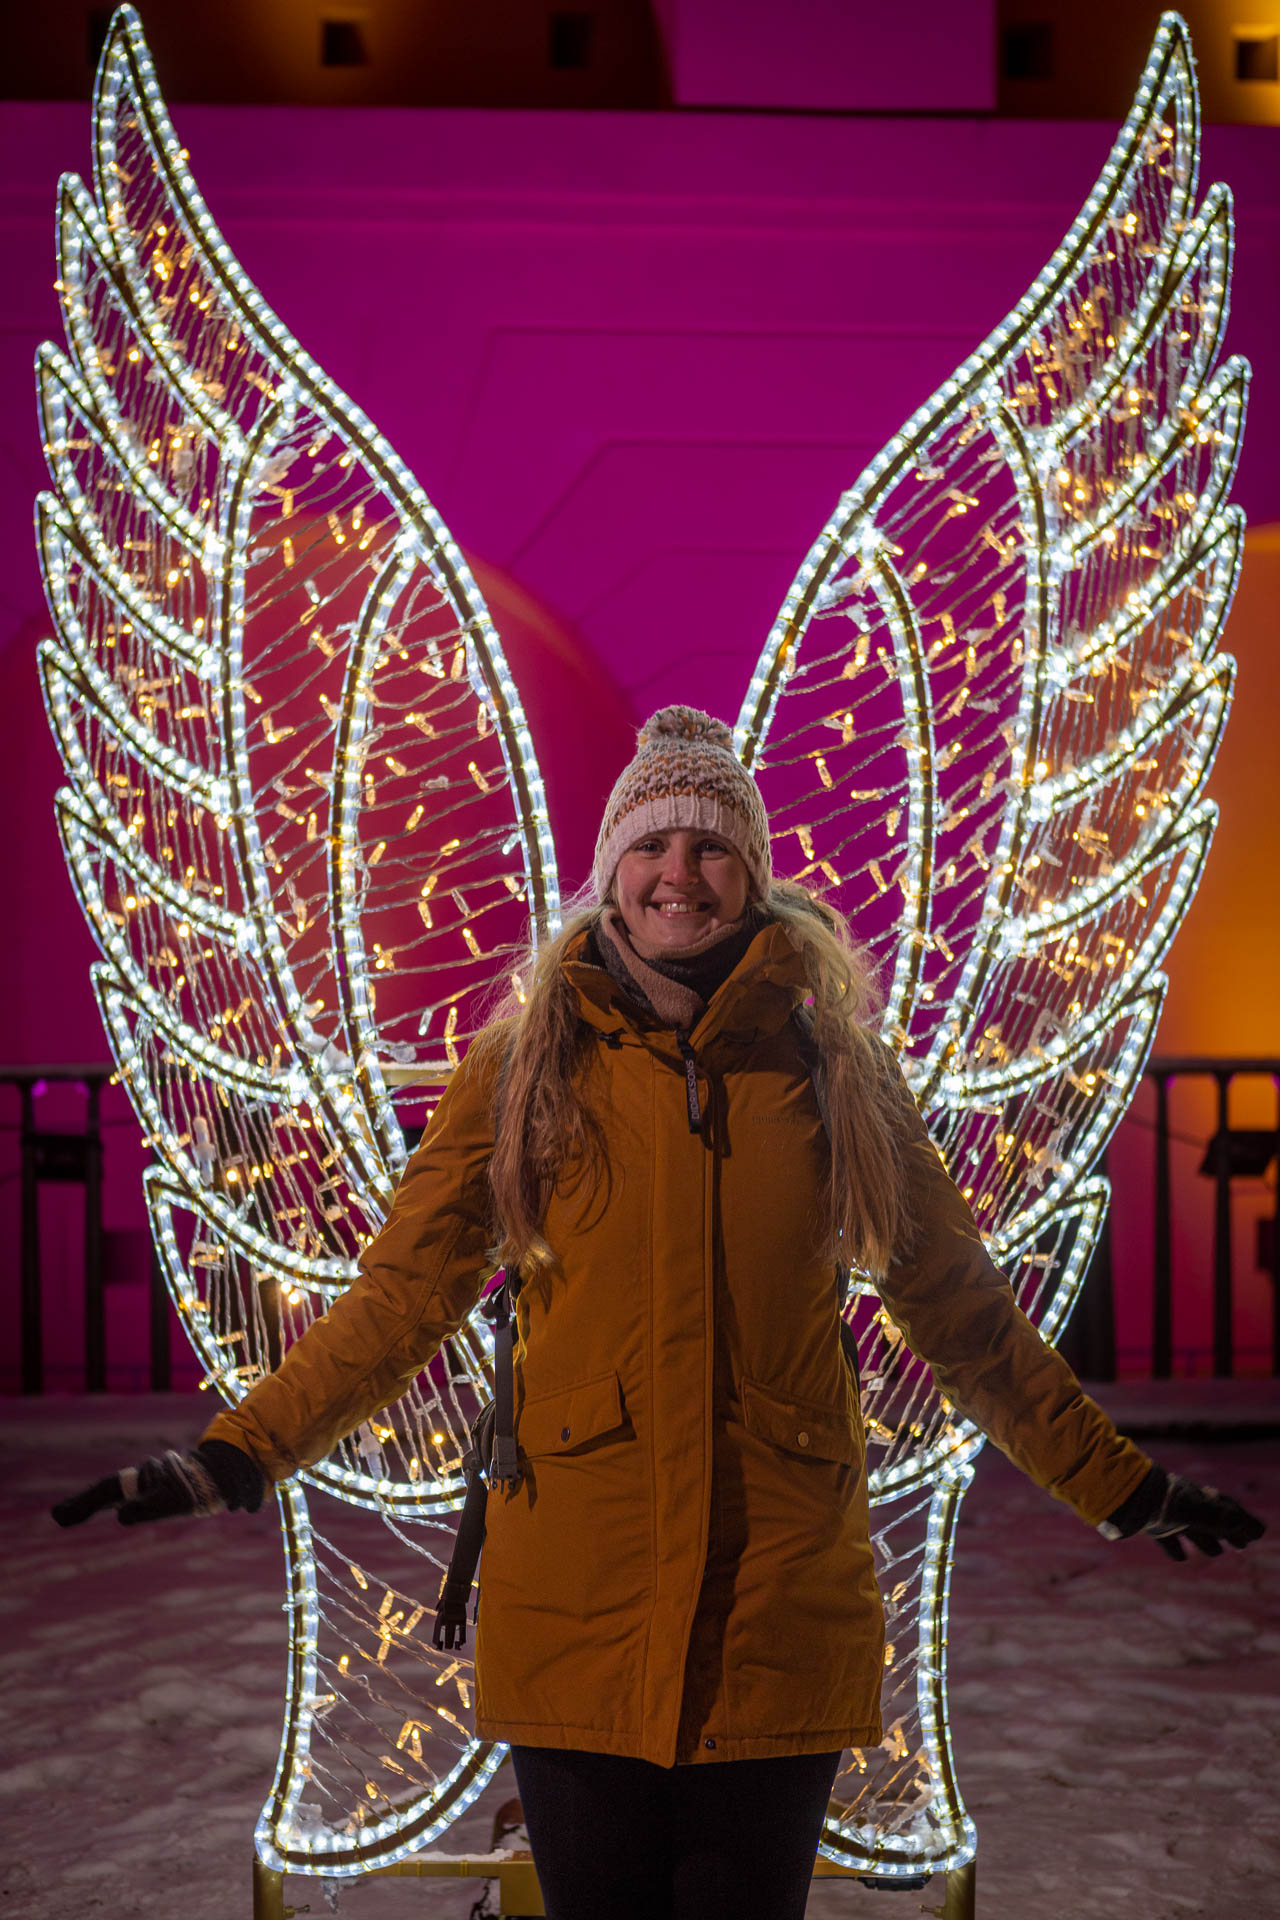 Manouk staat voor een lichtsculptuur van grote engelenvleugels met een roze verlichte muur erachter tijdens Christmas Garden Koblenz